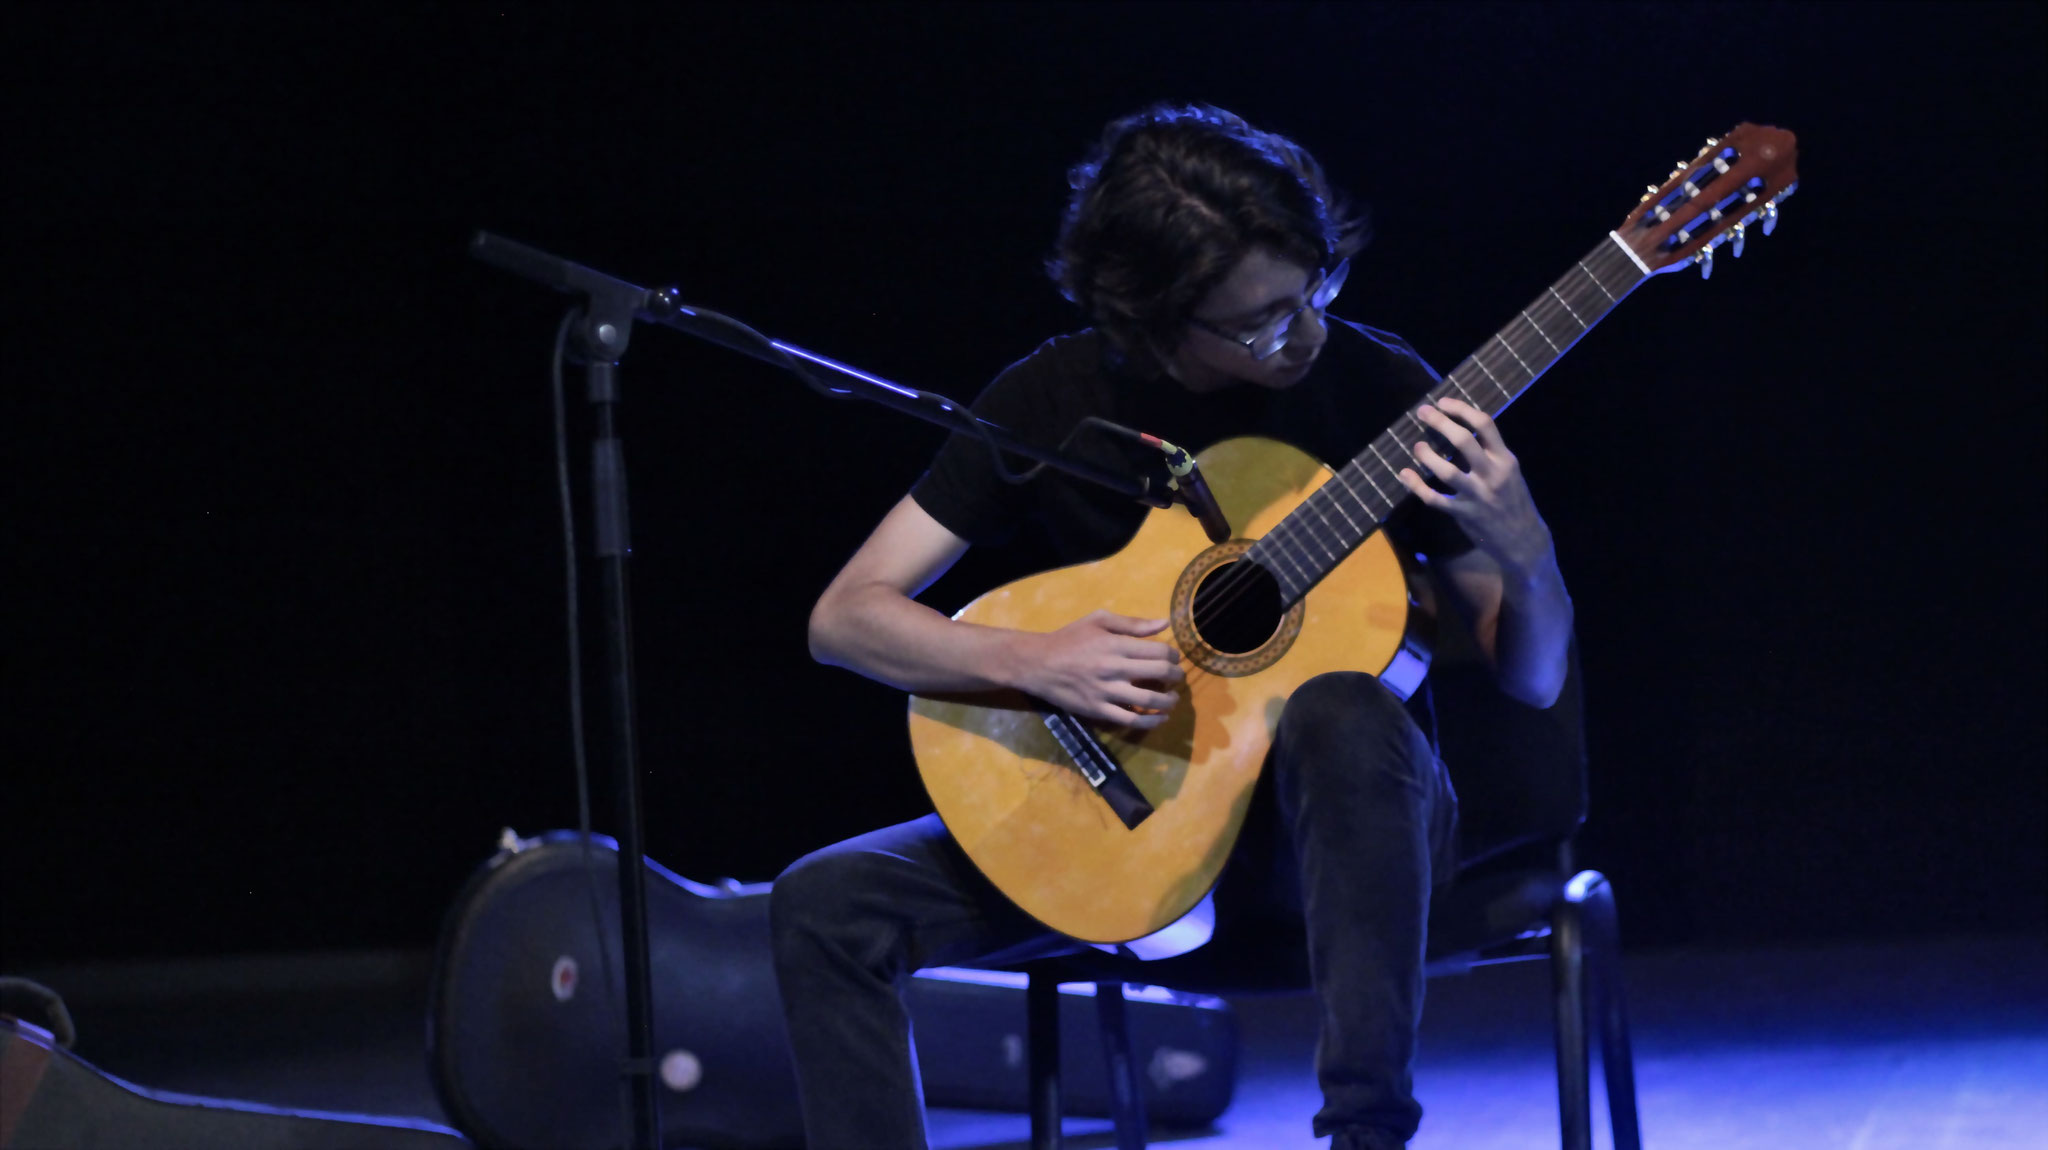 Presentación de música "Recital de guitarra" dirigido por Iván Cavazos y Javier Ortiz